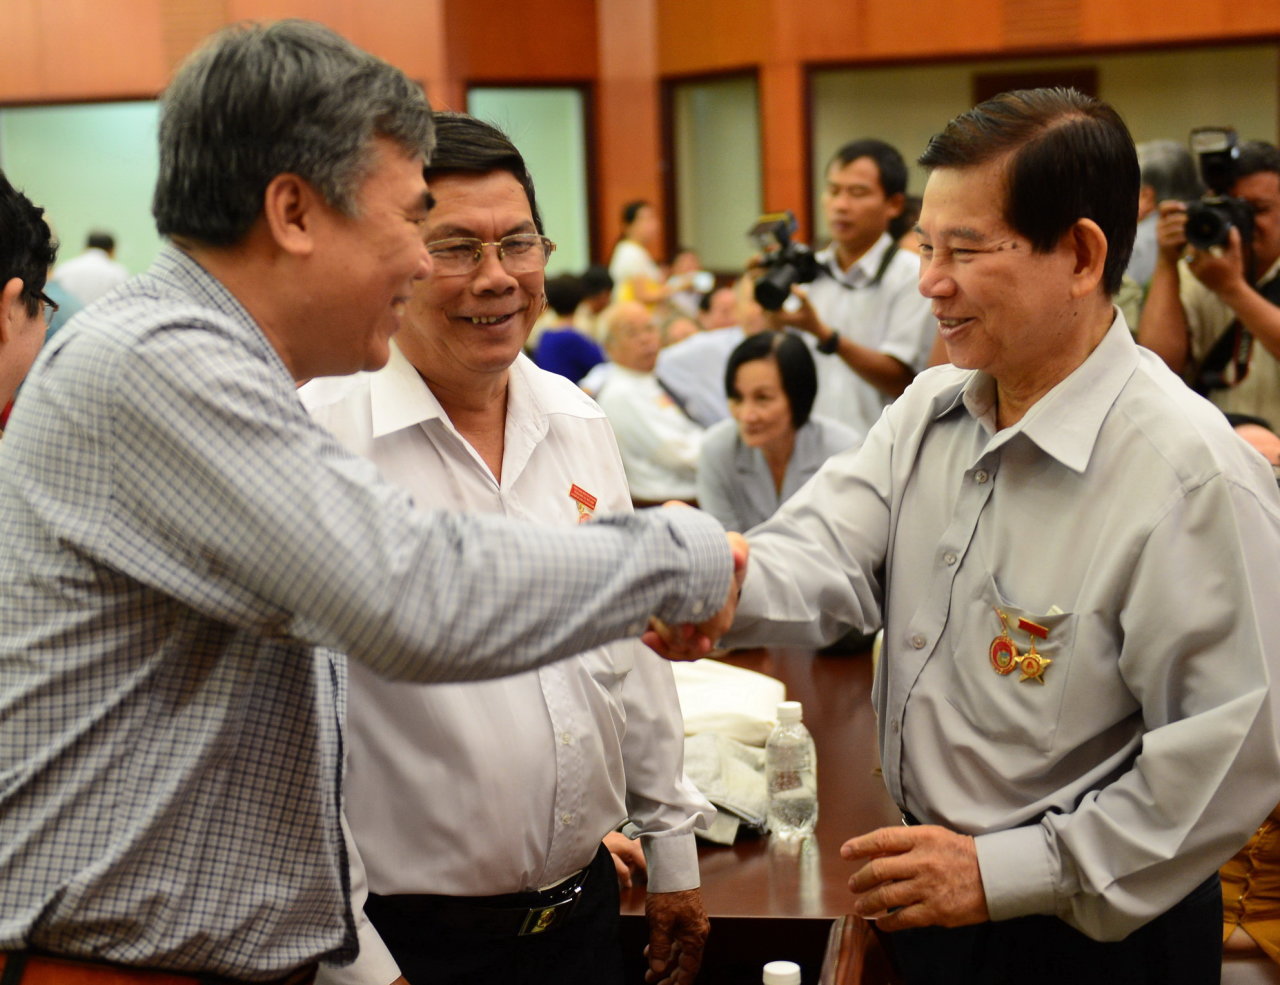 Nguyên Chủ tịch nước Nguyễn Minh Triết (phải) và các cựu đoàn viên vui mừng trong ngày gặp lại - Ảnh: QUANG ĐỊNH